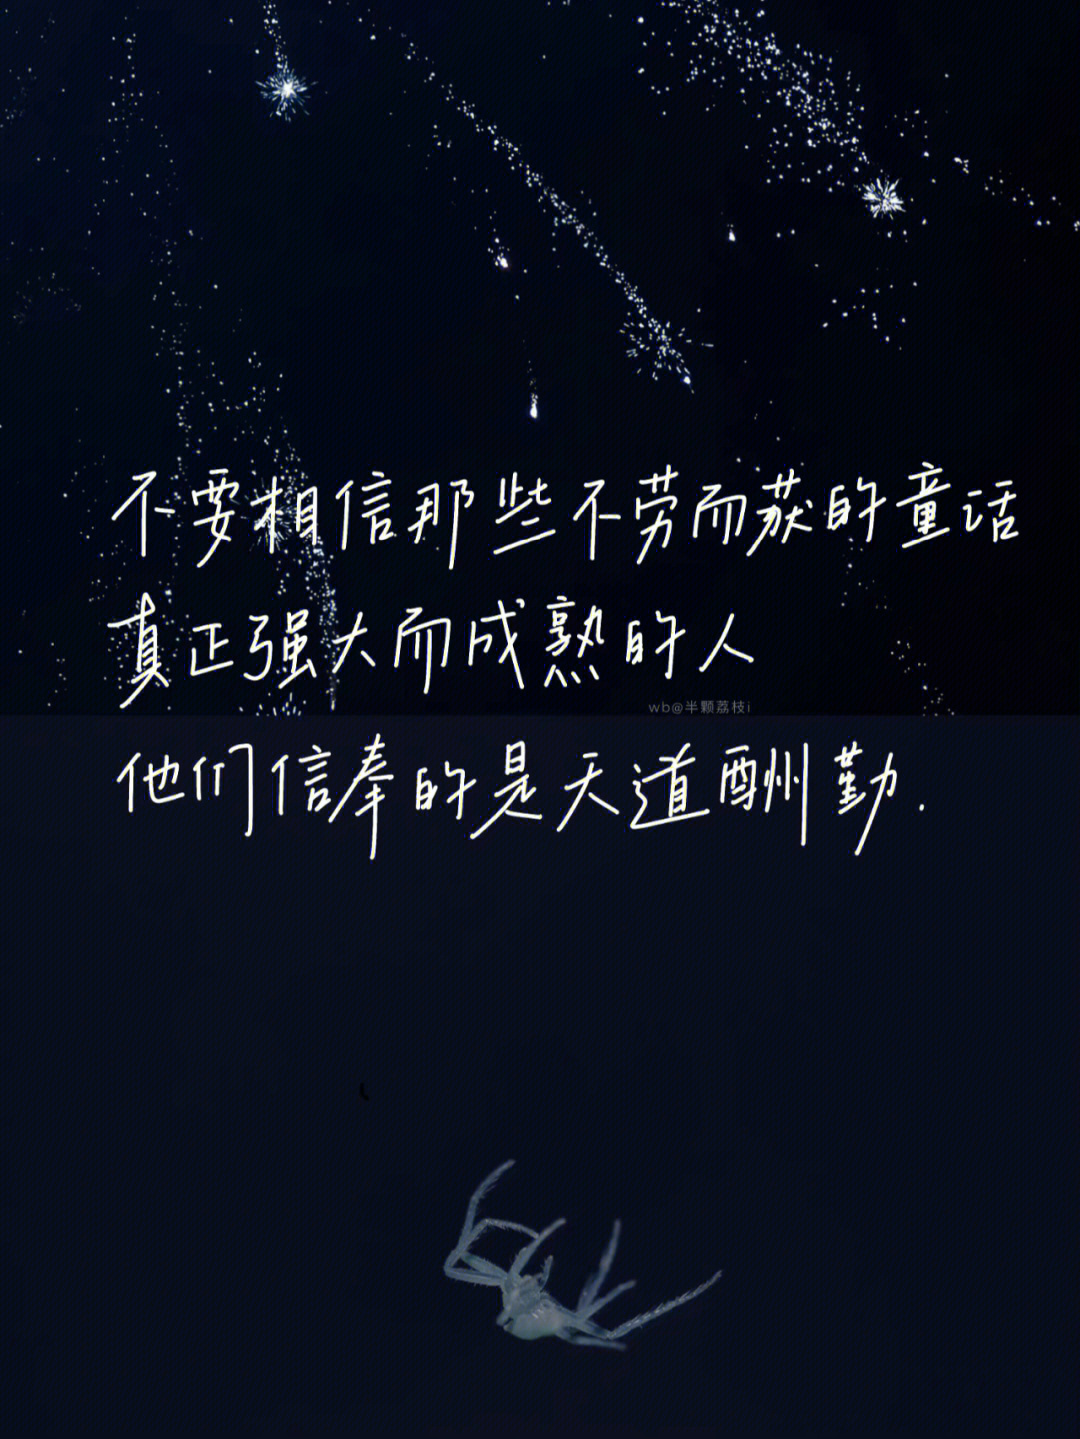 王俊凯键盘壁纸文字图片